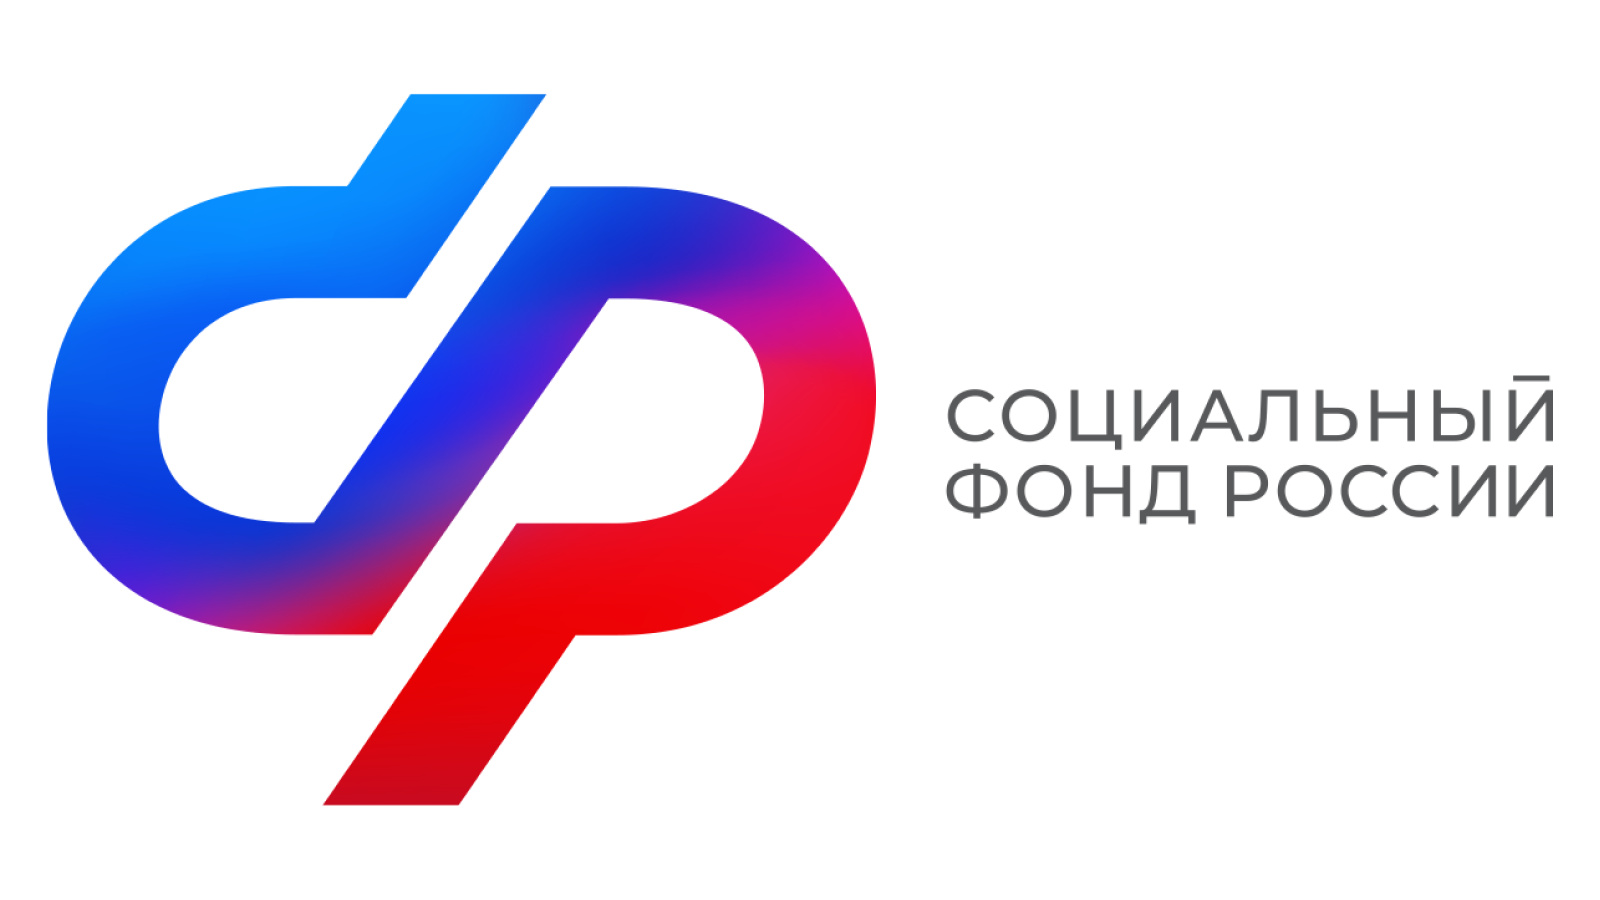 Почти 700 пенсий с начала года назначило Отделение СФР по Калужской области в автоматическом режиме.